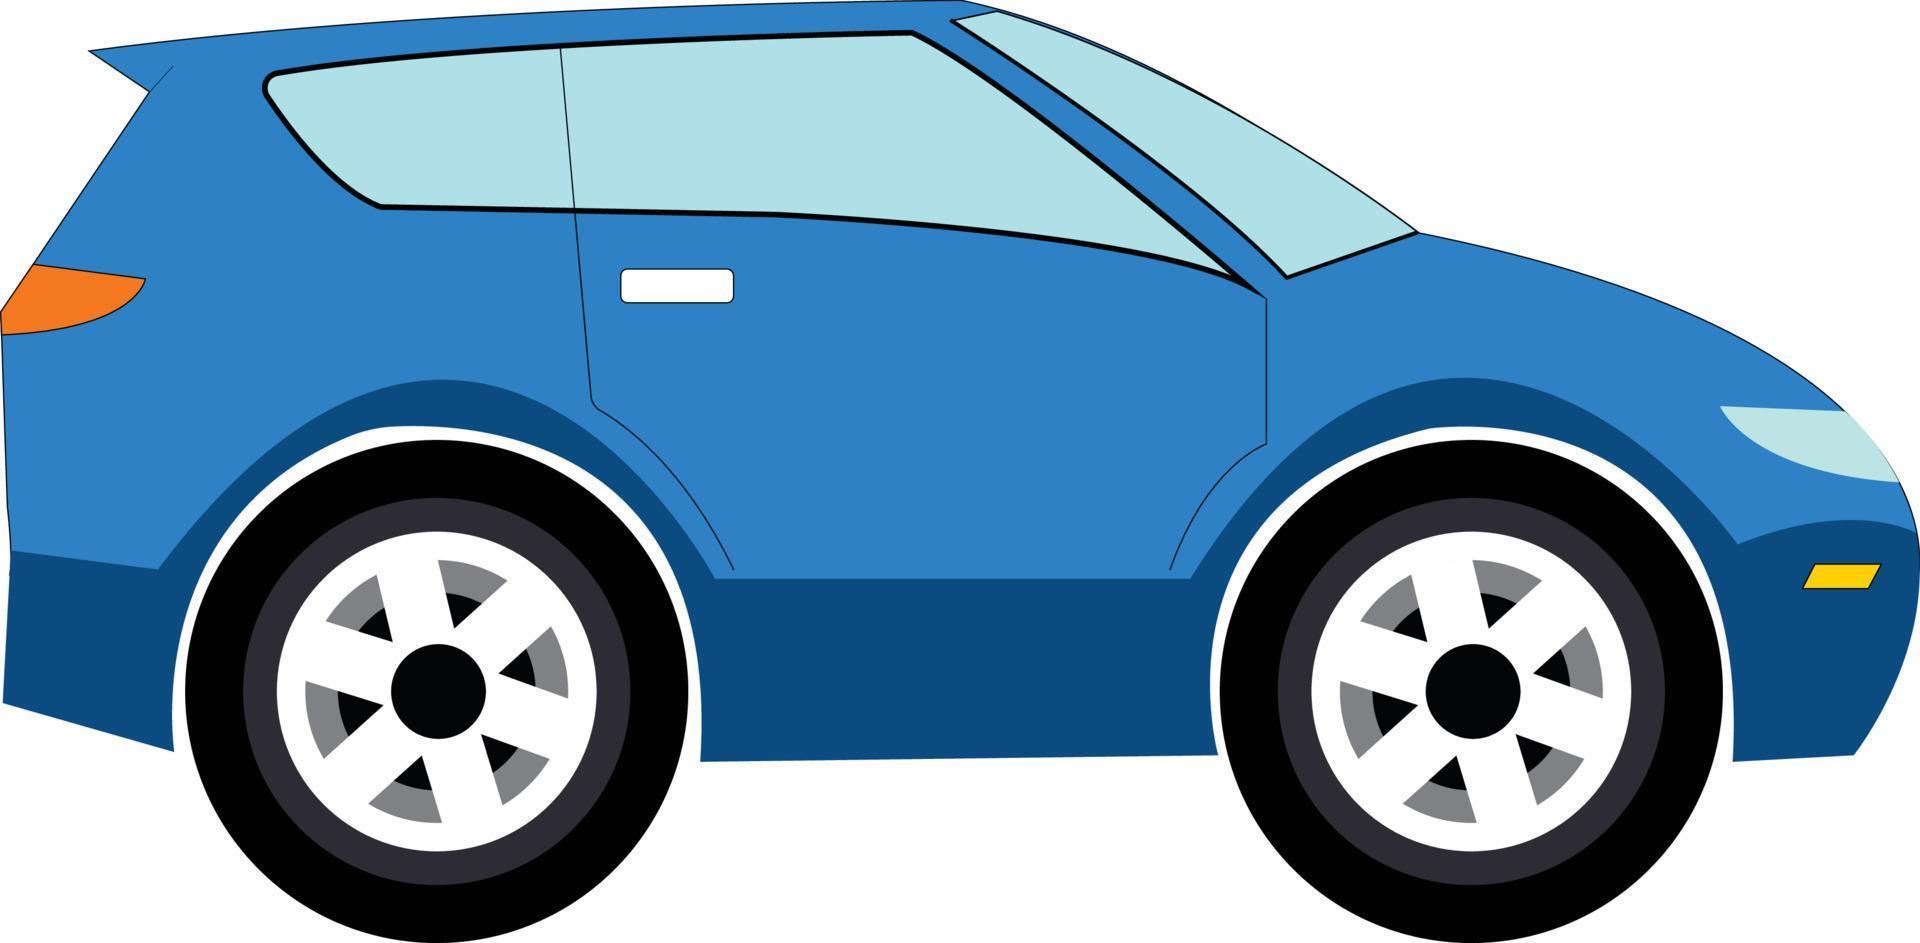 Blue Cartoon Car design ready for 2d Animation vector